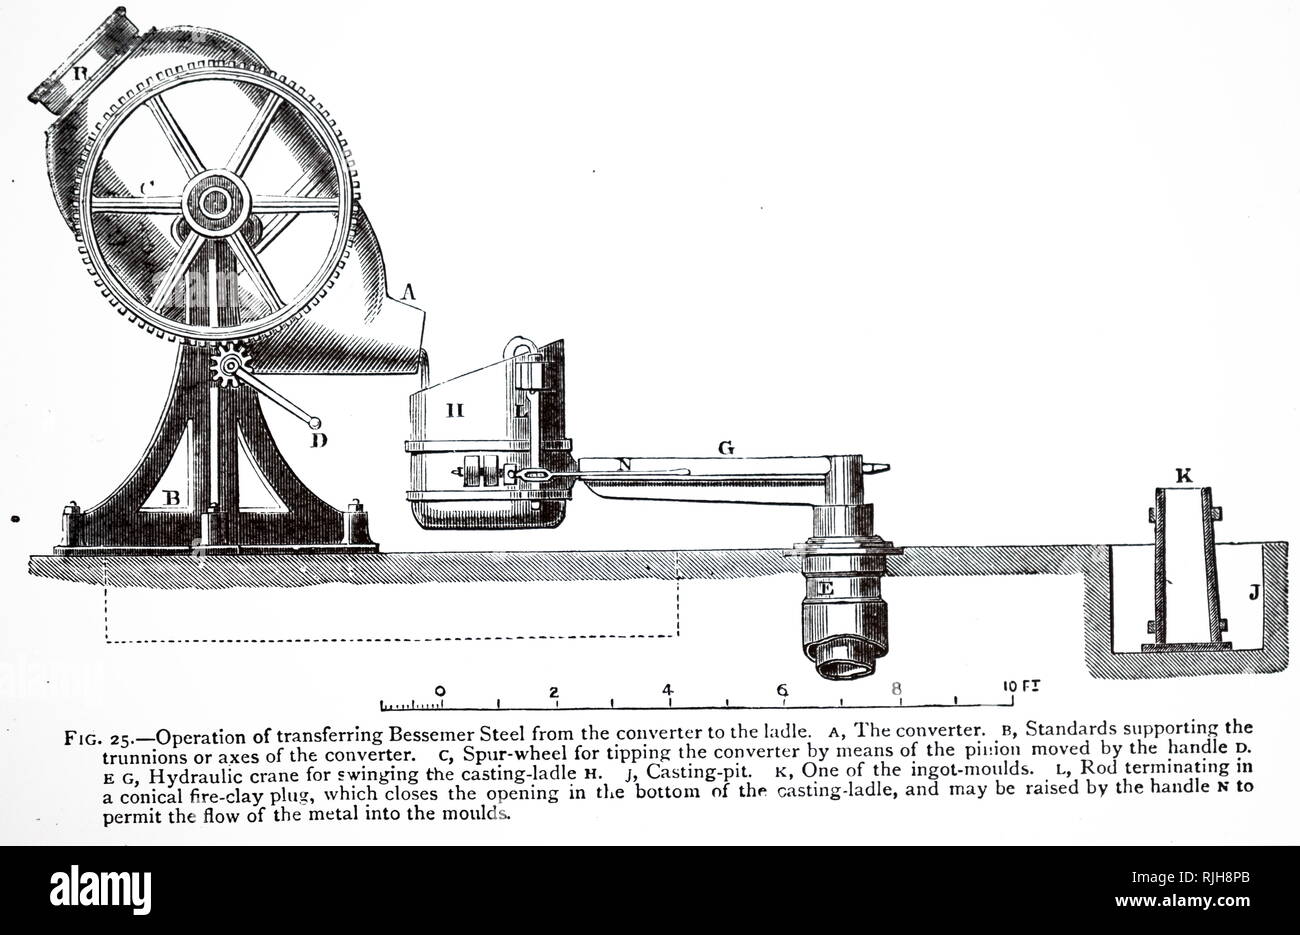 Un grabado representando el proceso Bessemer para la producción masiva de  acero a partir de arrabio líquido antes del desarrollo de la Chimenea Horno.  Nombrado después de Henry Bessemer (1813-1898), un inventor